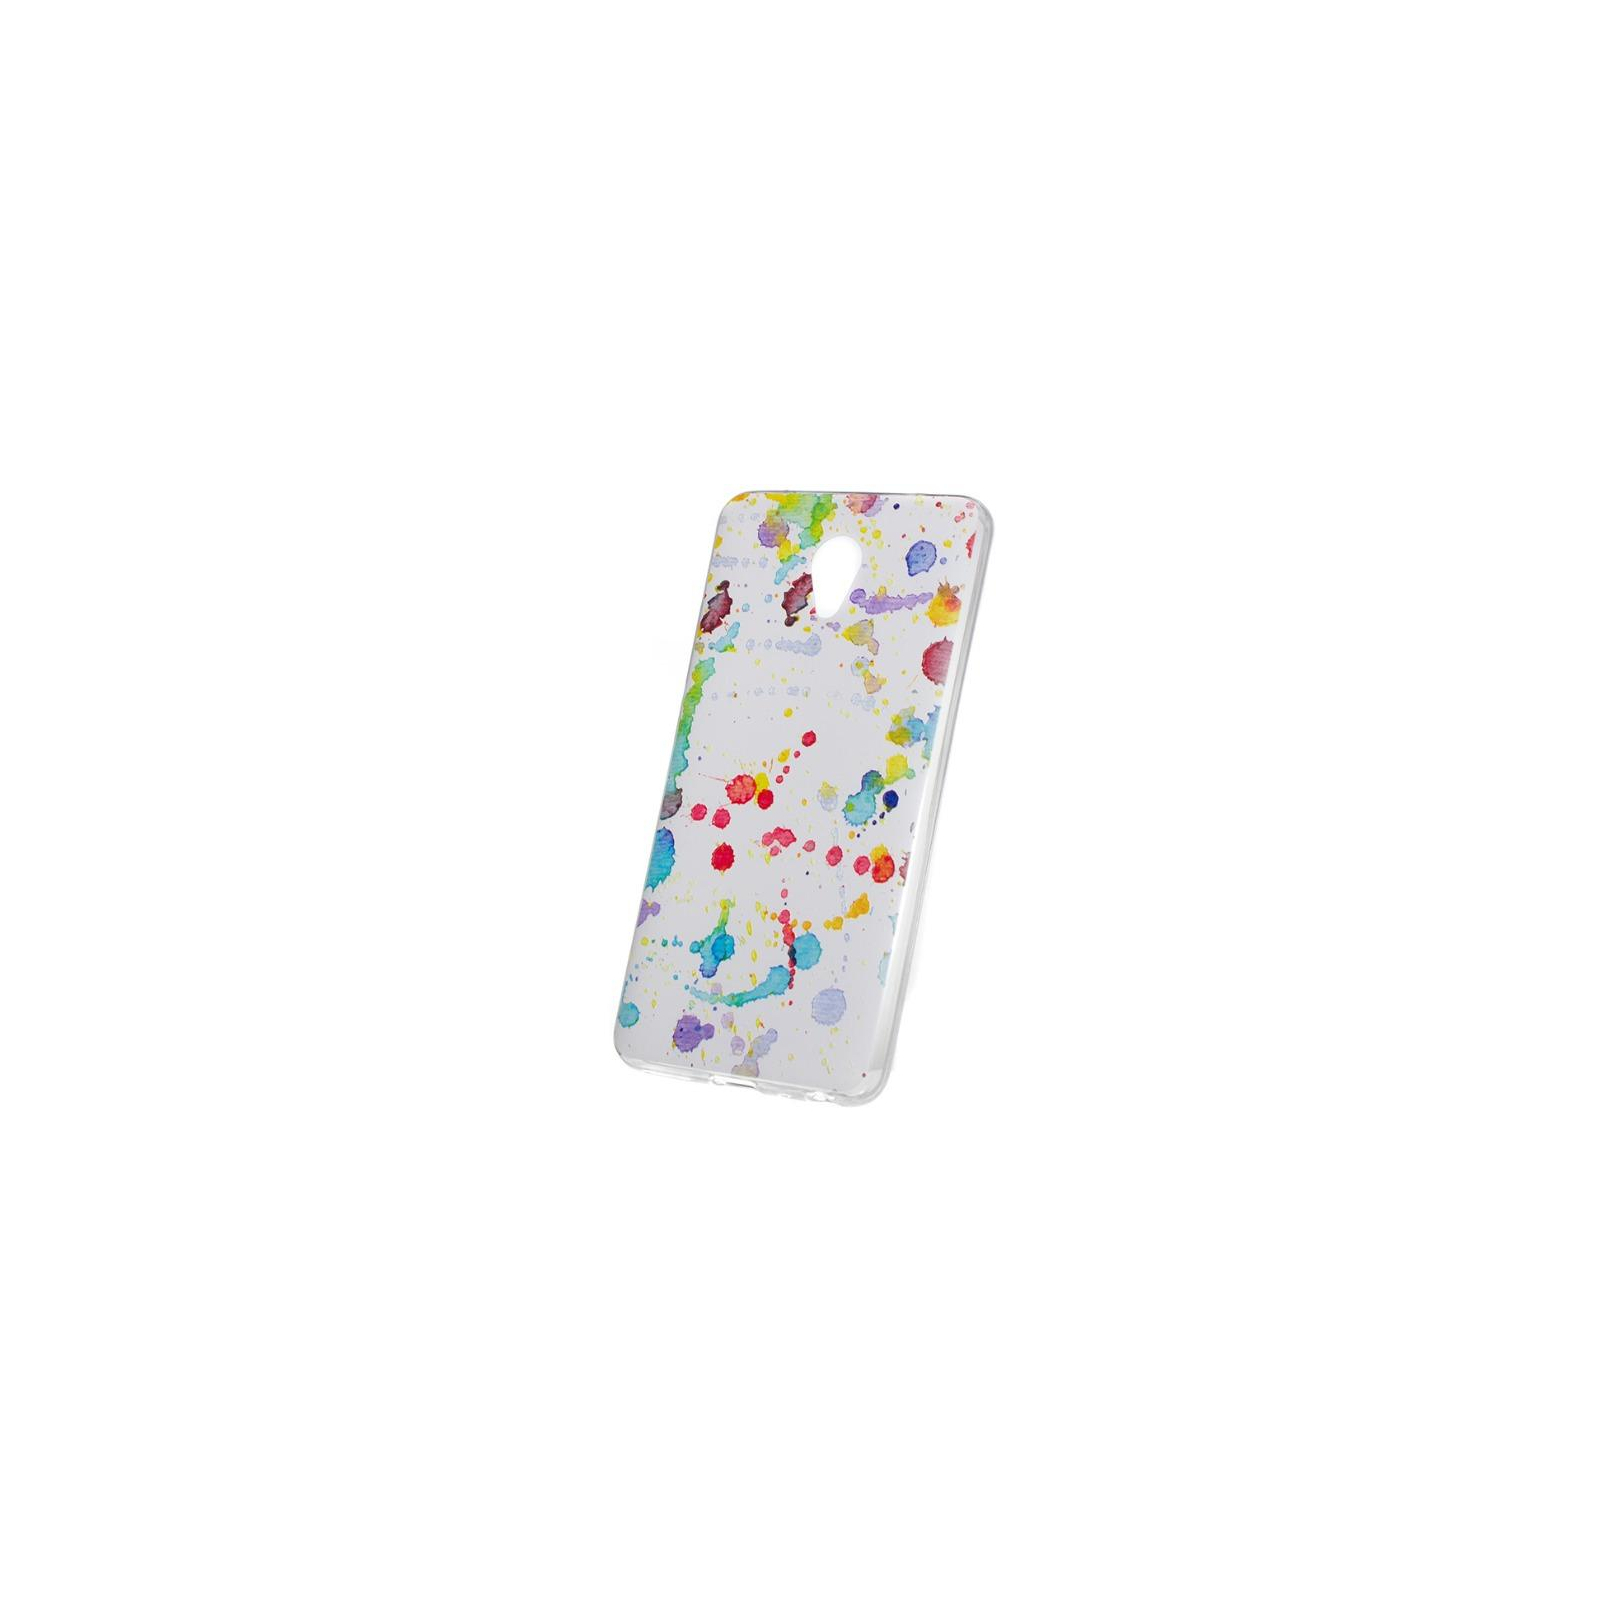 Чехол для мобильного телефона ColorWay ultrathin TPU case for Meizu M5 Note, pic. A118 (CW-CTPMM5N-TPU) изображение 2